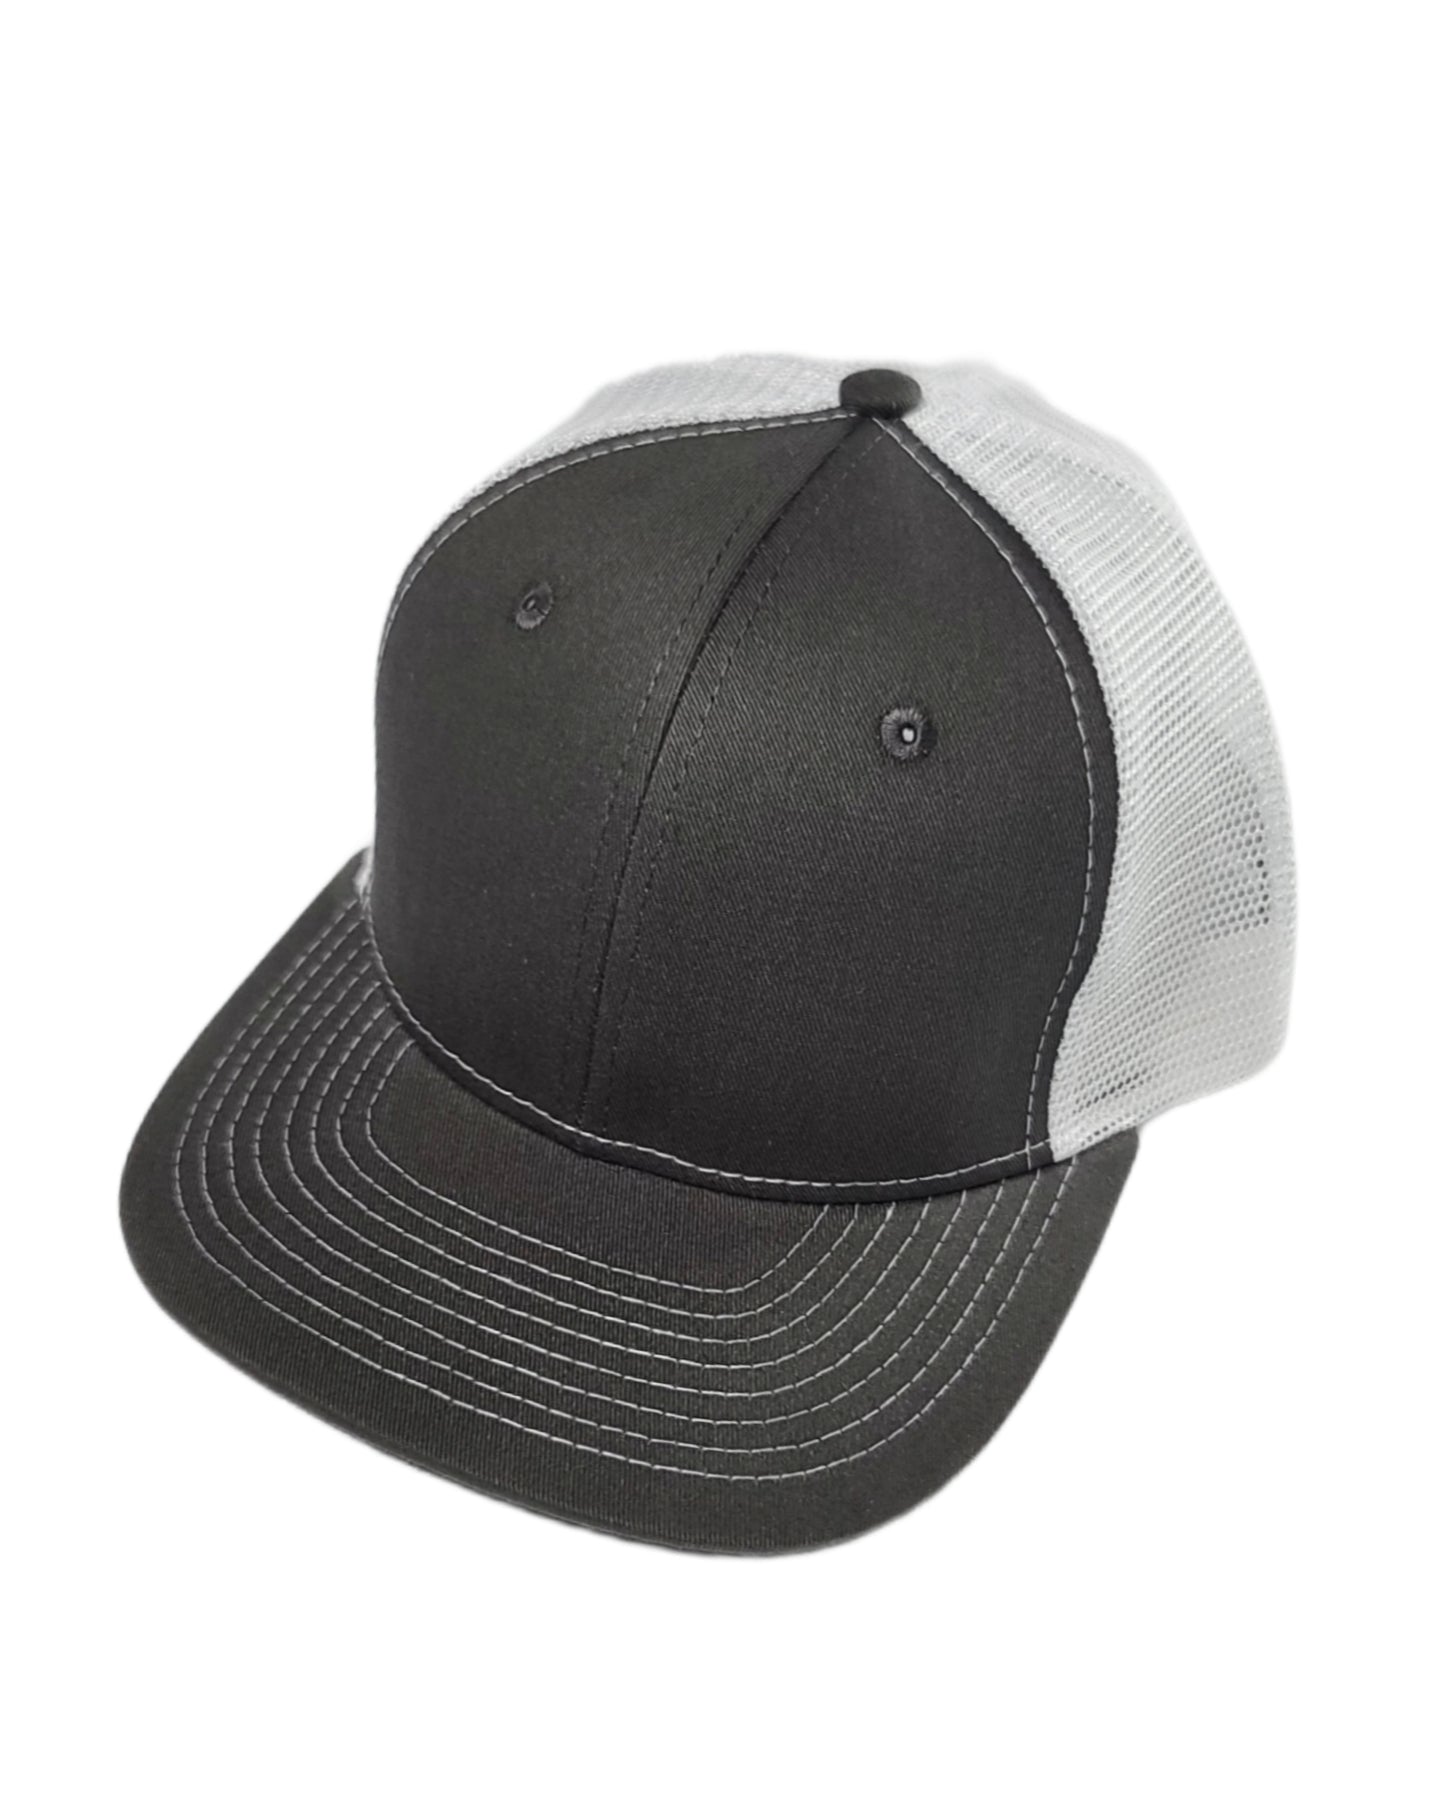 dark gray and white mesh trucker hat calitrendz